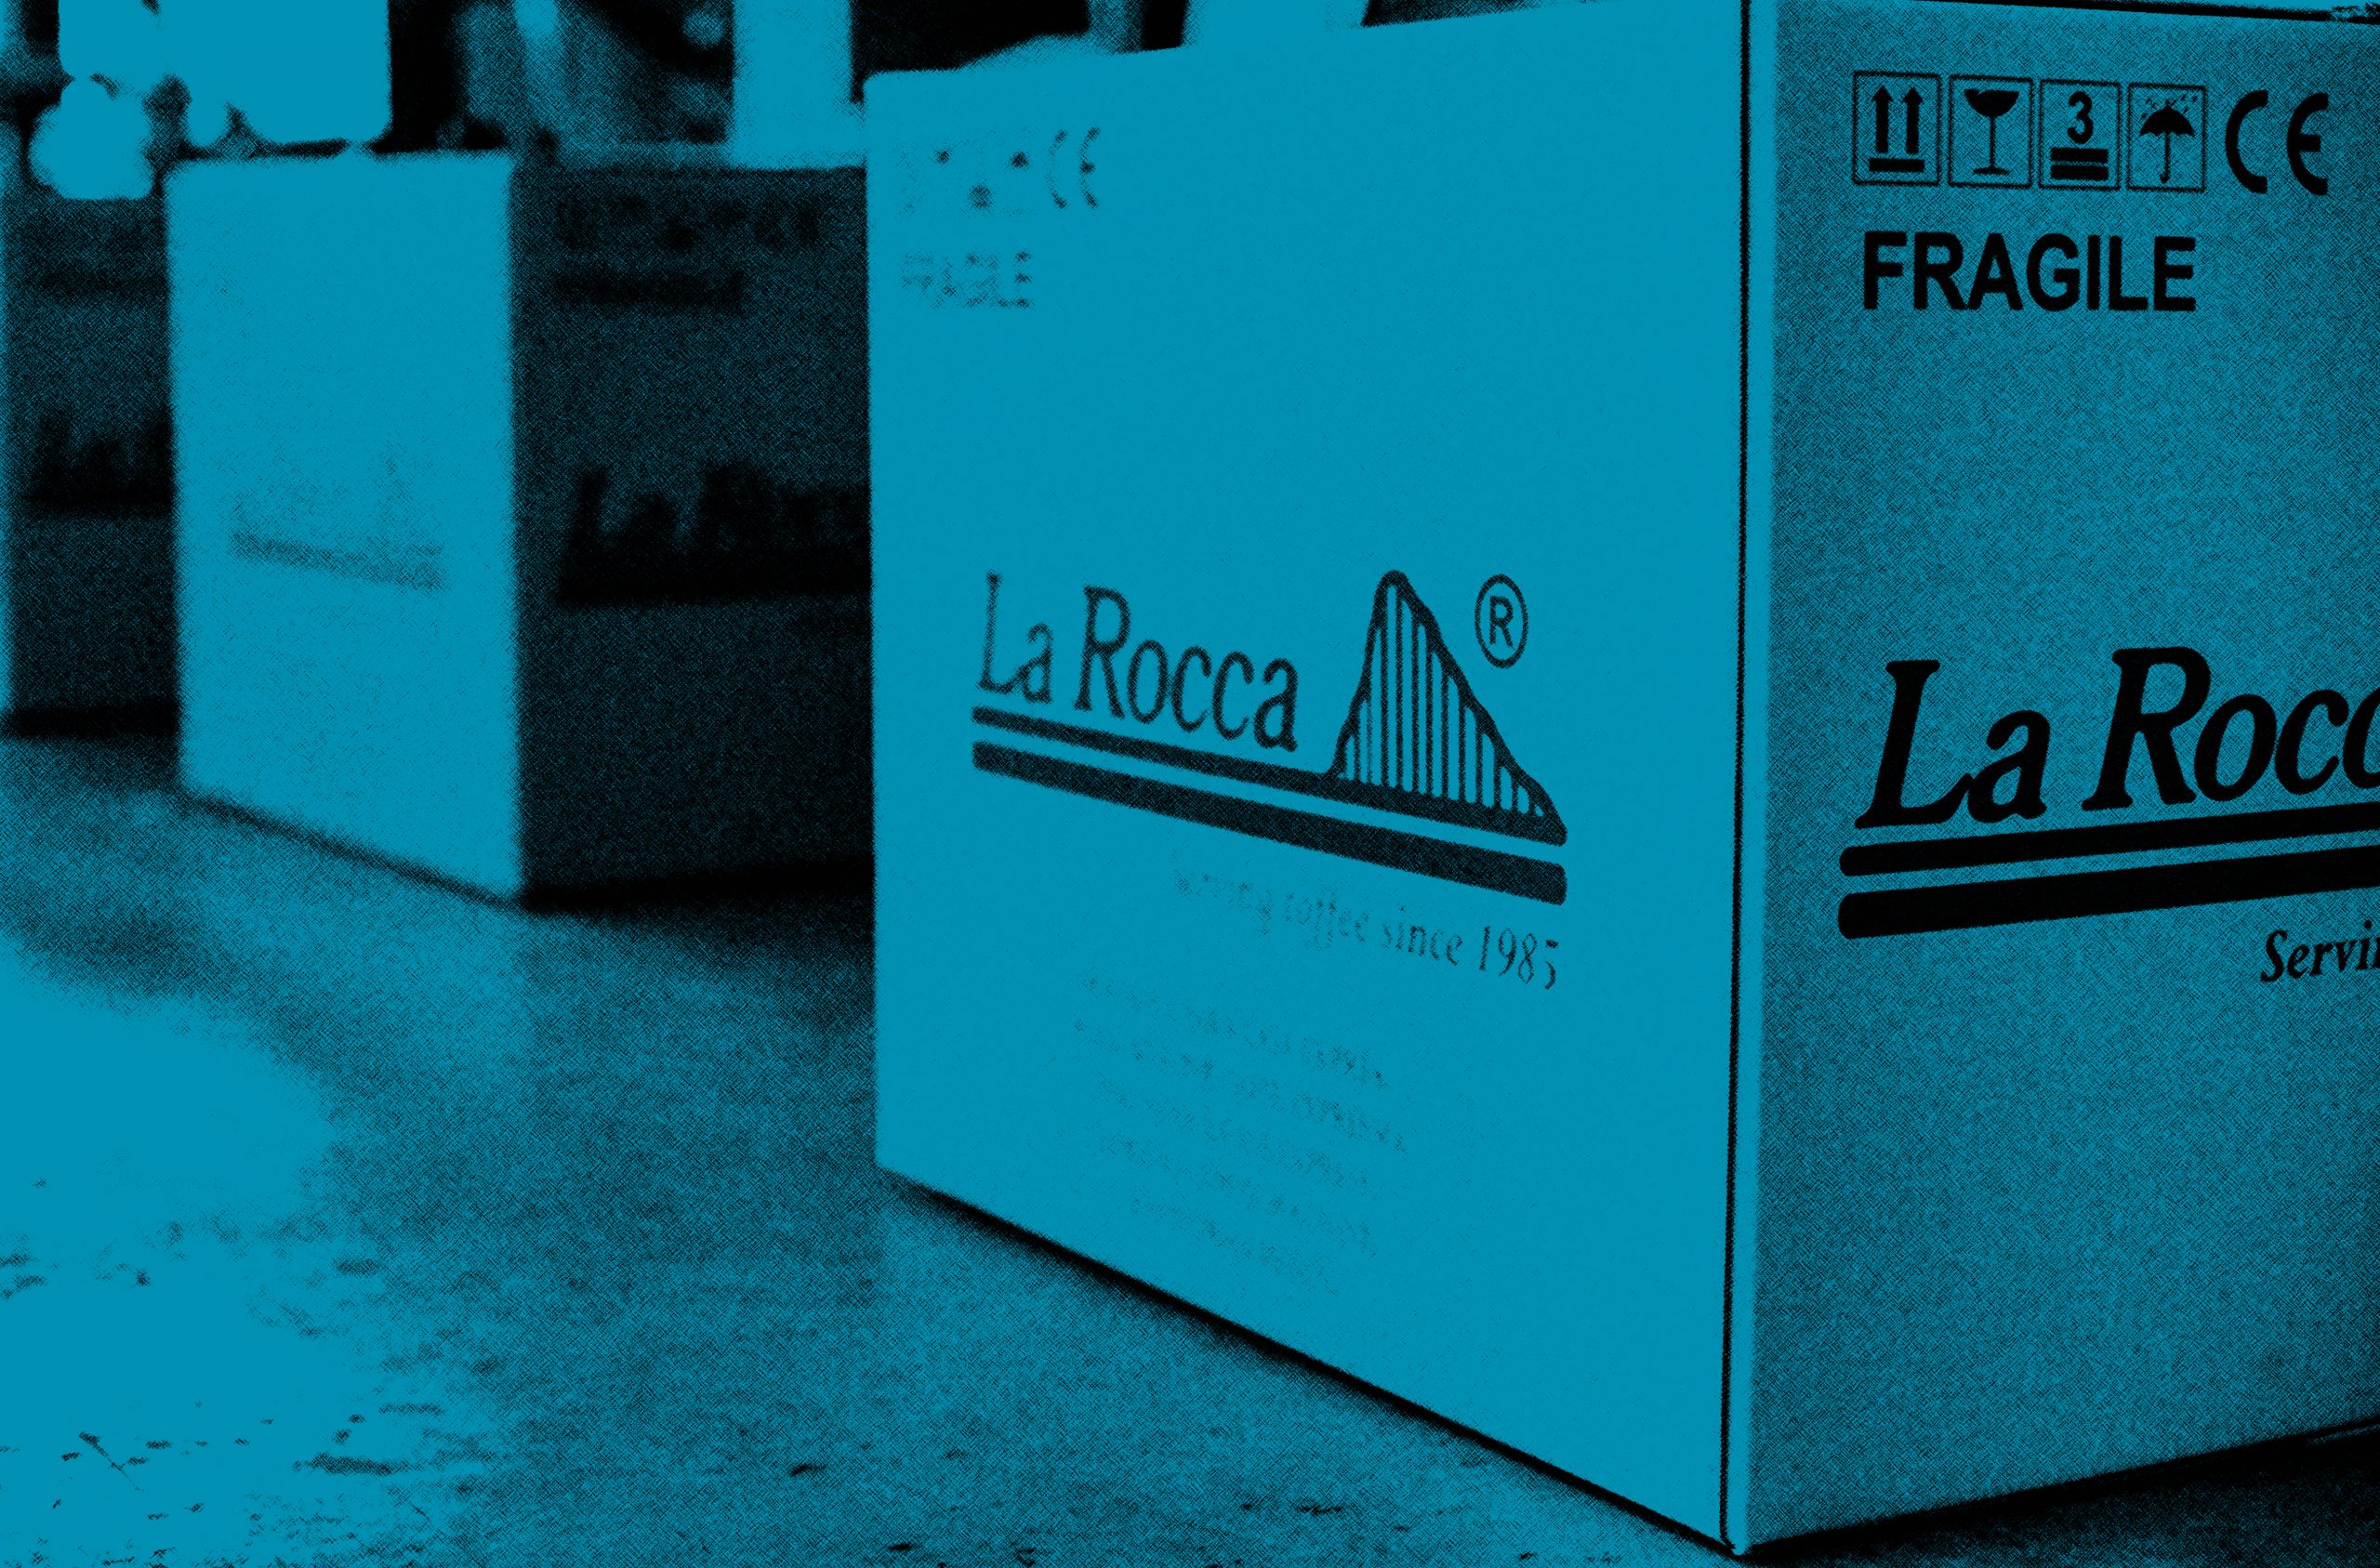 Detalle de unas cajas blancas con el logo de La Rocca